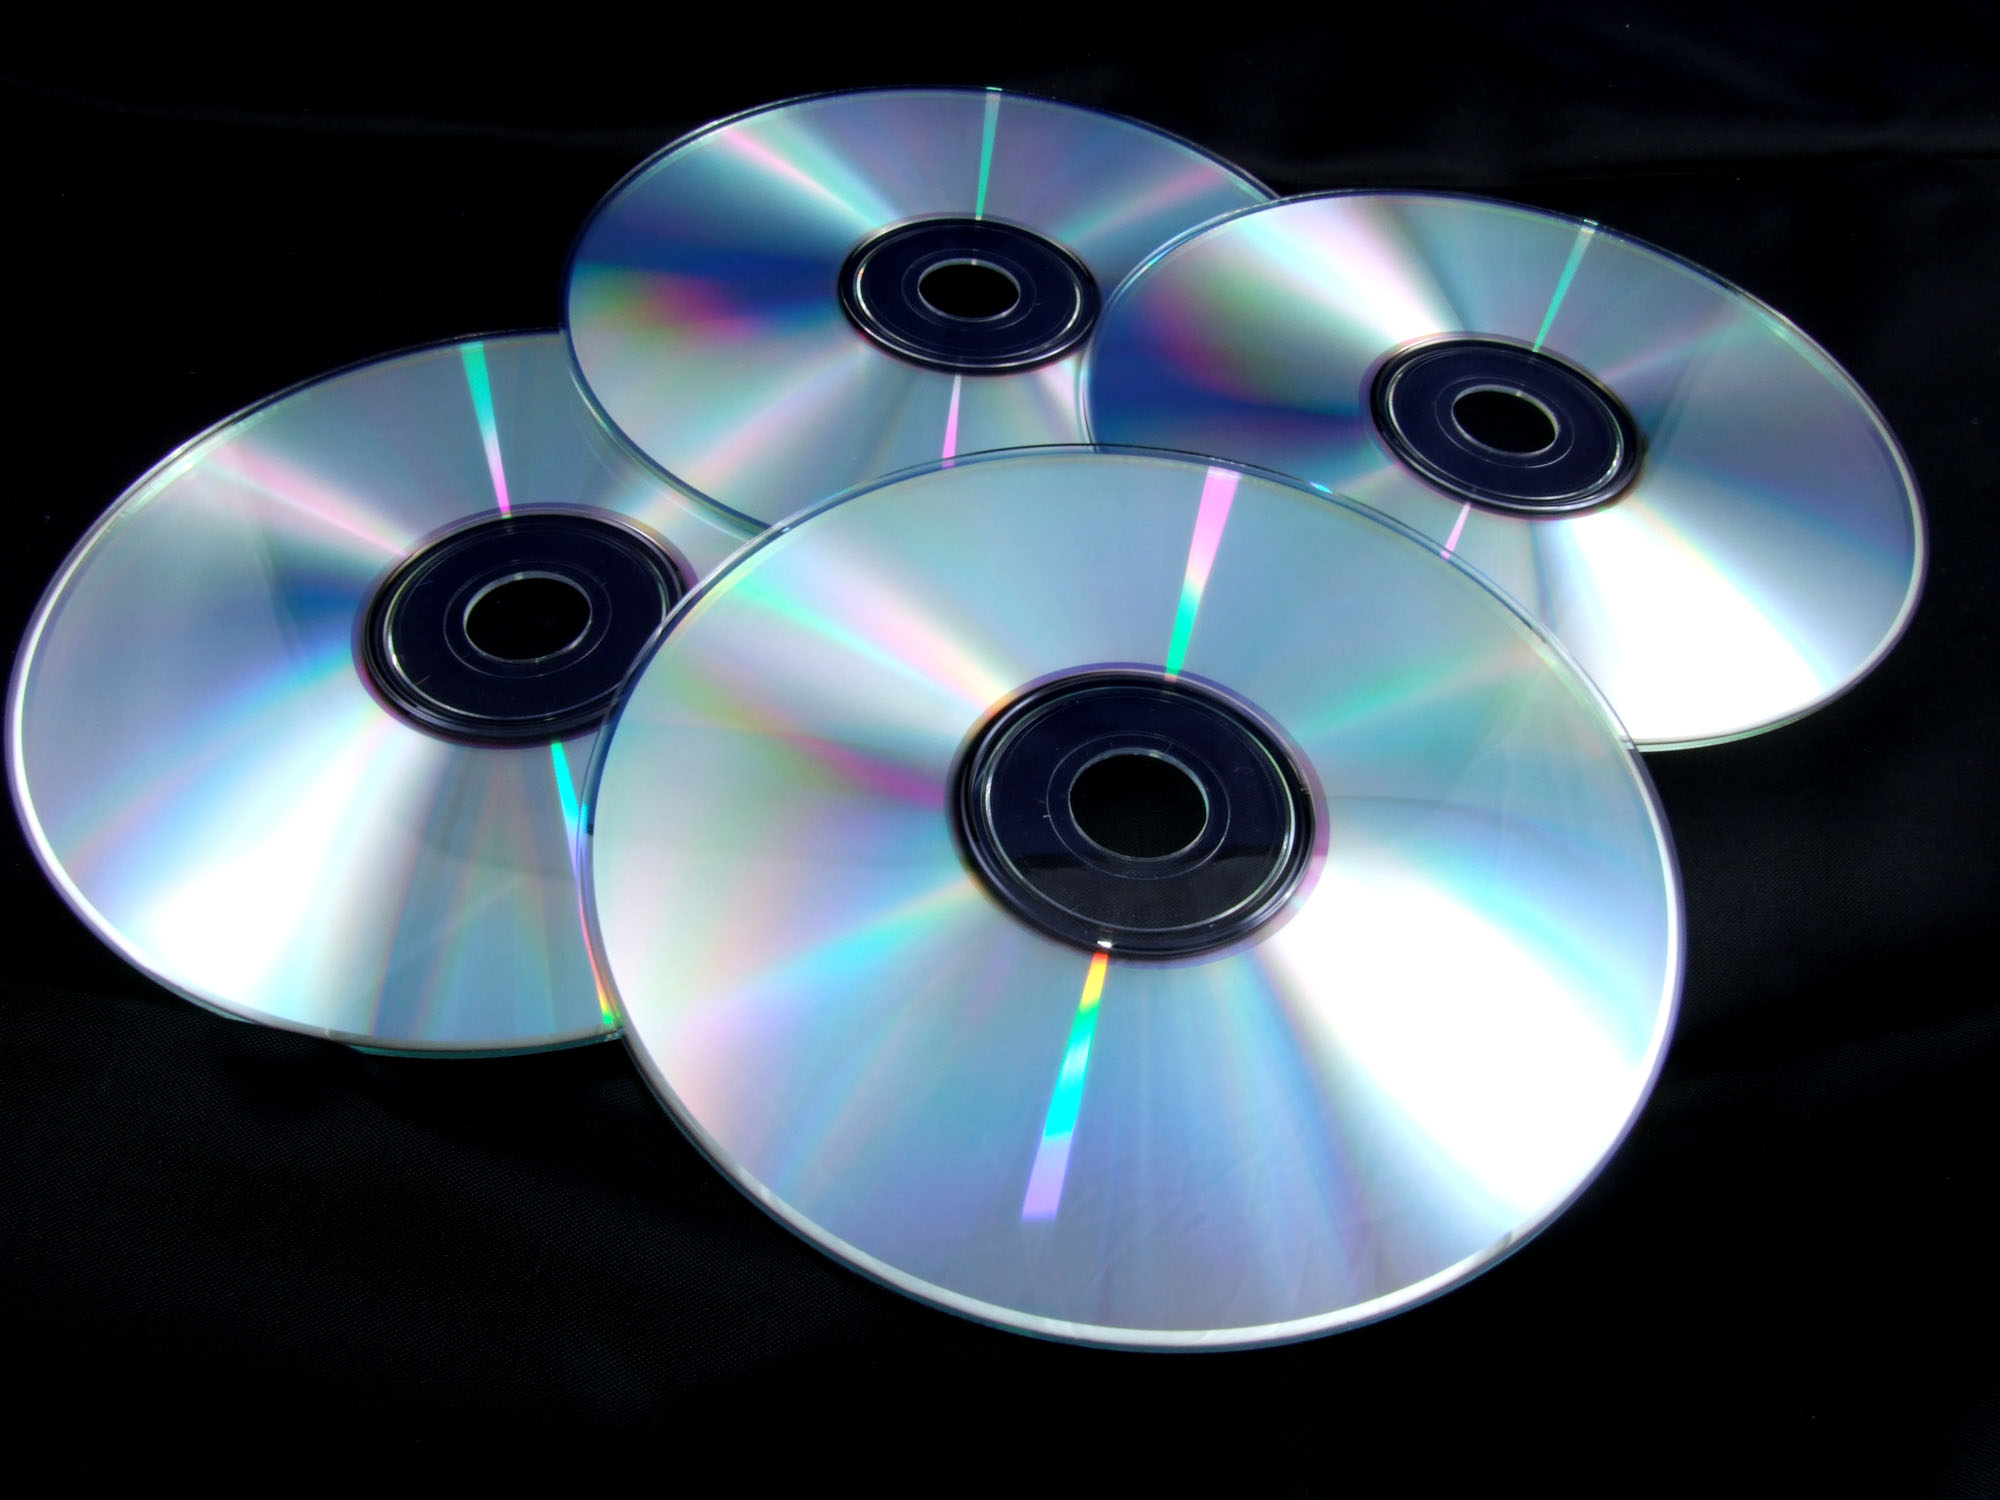 Много использованных дисков. CD - Compact Disk (компакт диск). Лазерный компакт-диск (CD, CD-ROM).. DVD-диски (DVD – Digital versatile Disk, цифровой универсальный диск),. Оптические лазерные диски.